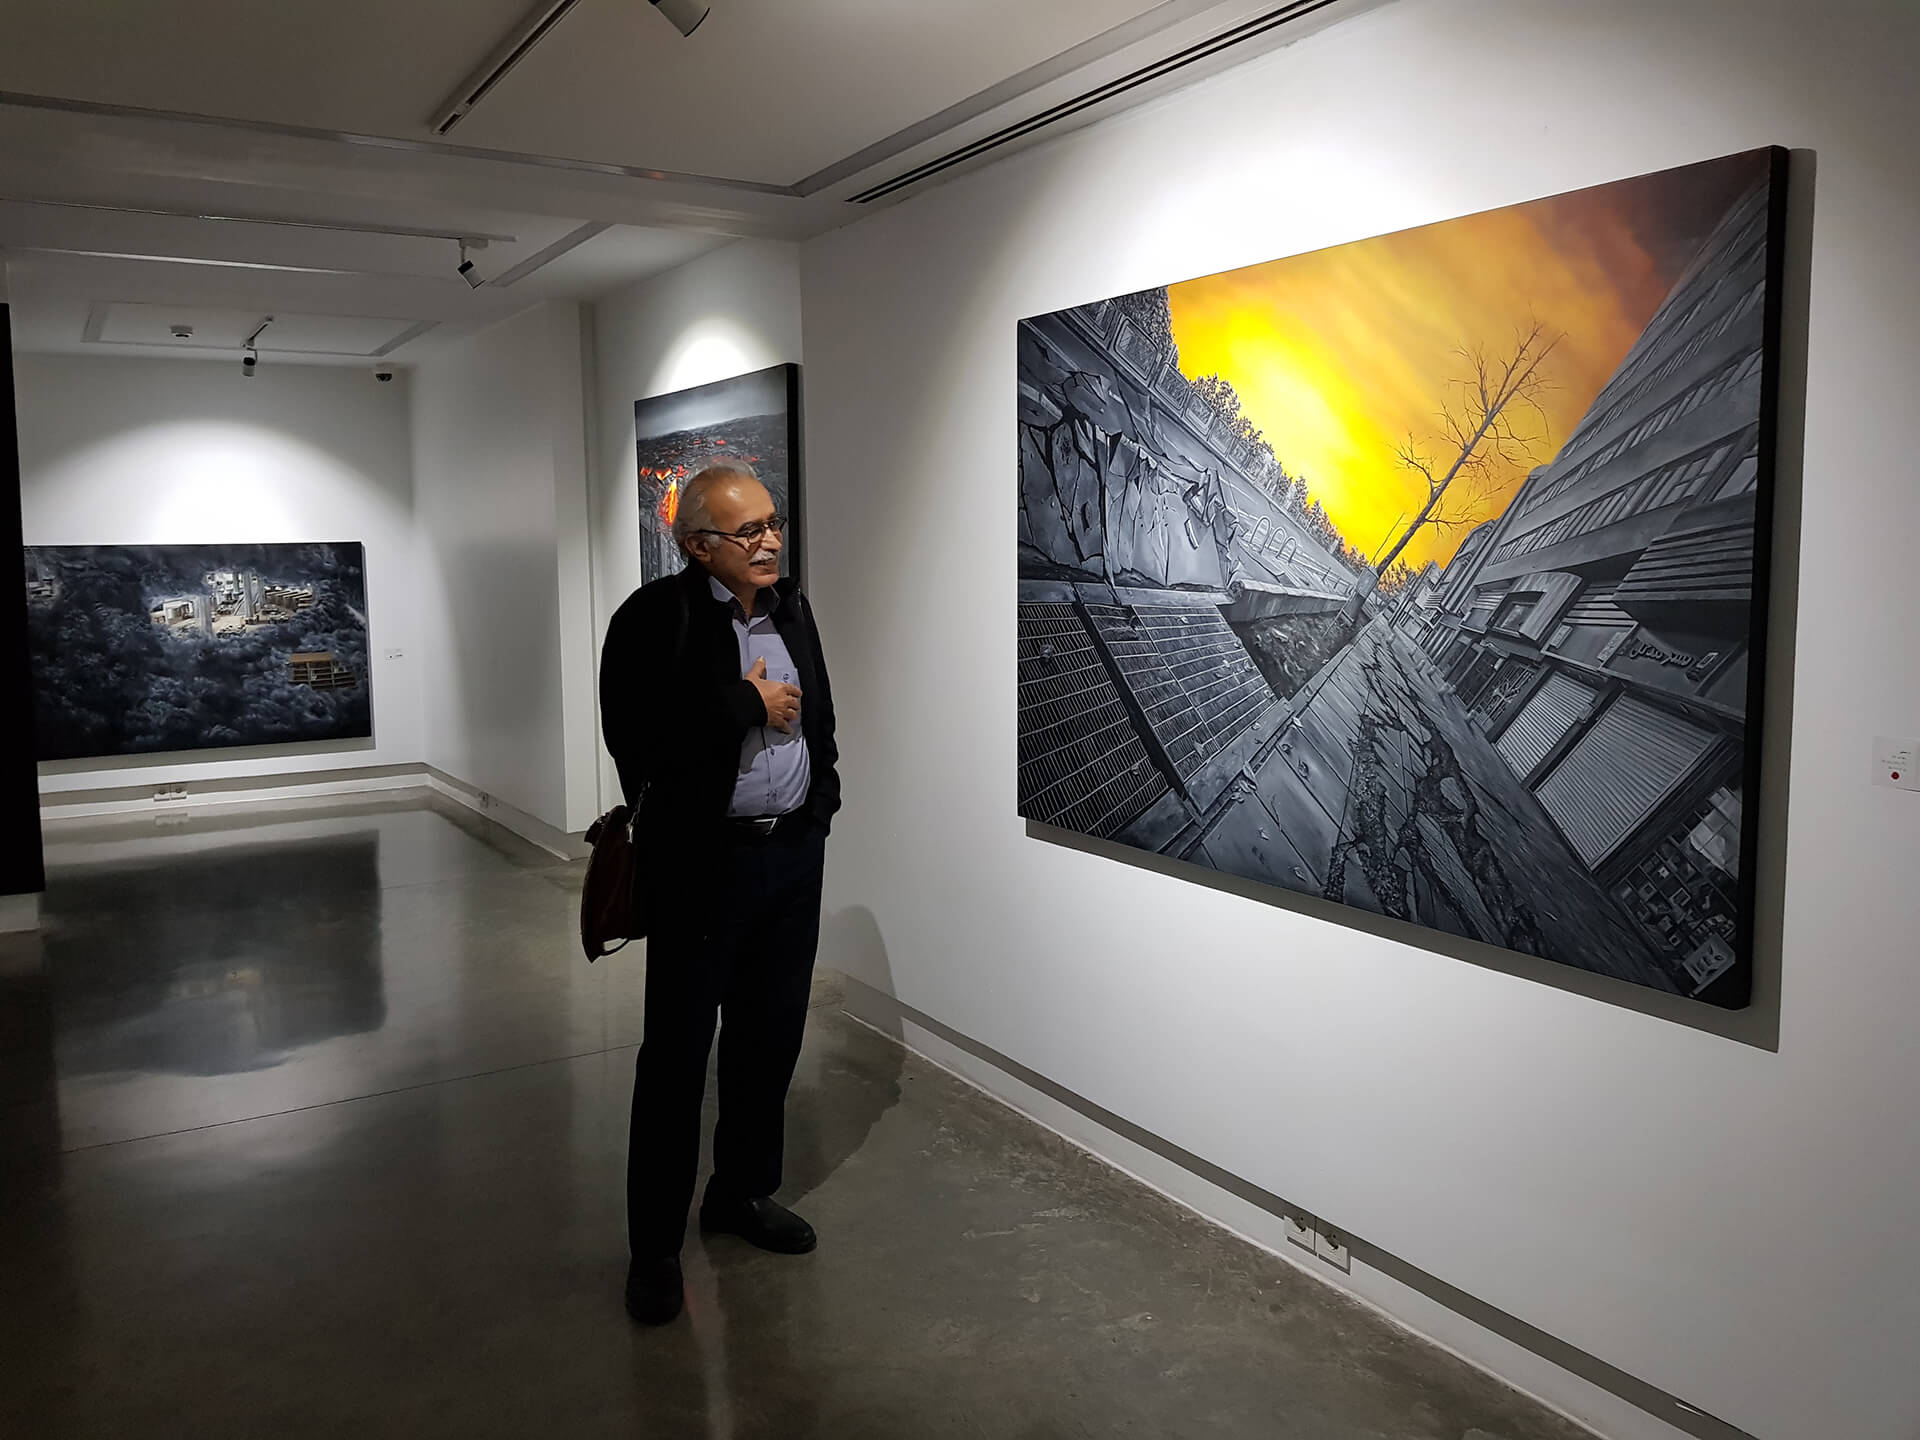   2018 - Saless gallery, Tehran, Iran 